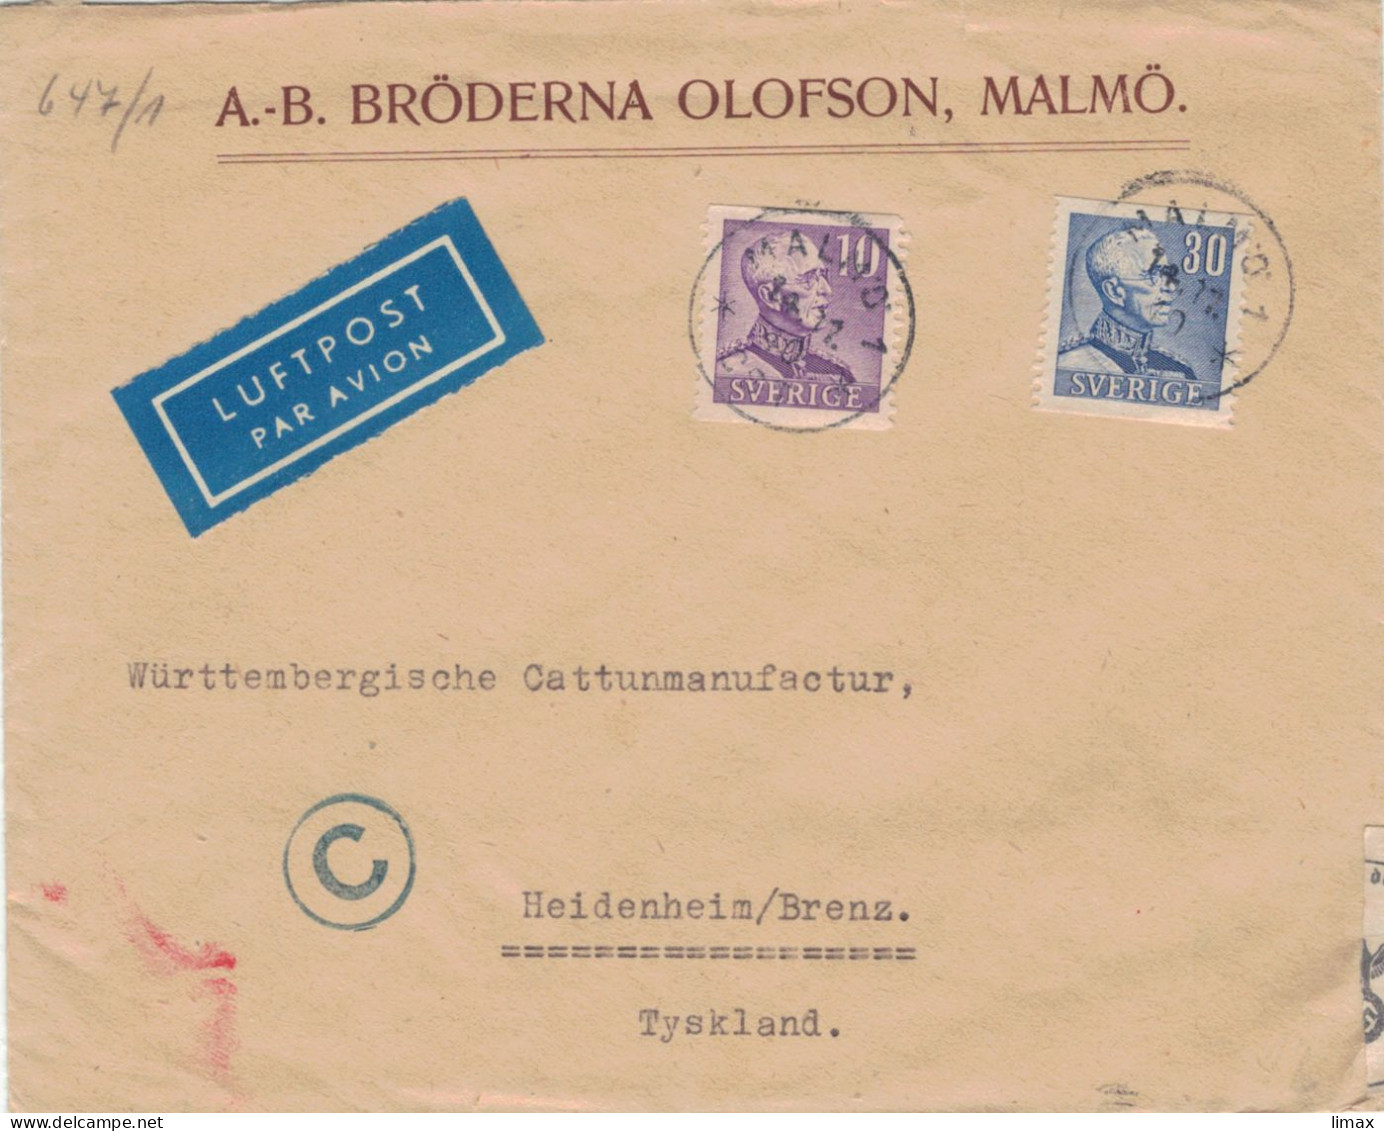 Bröderna Olofson Malmö 1940 > Württembergische Cattunmanufactur Heidenheim - Zensur OKW - Covers & Documents